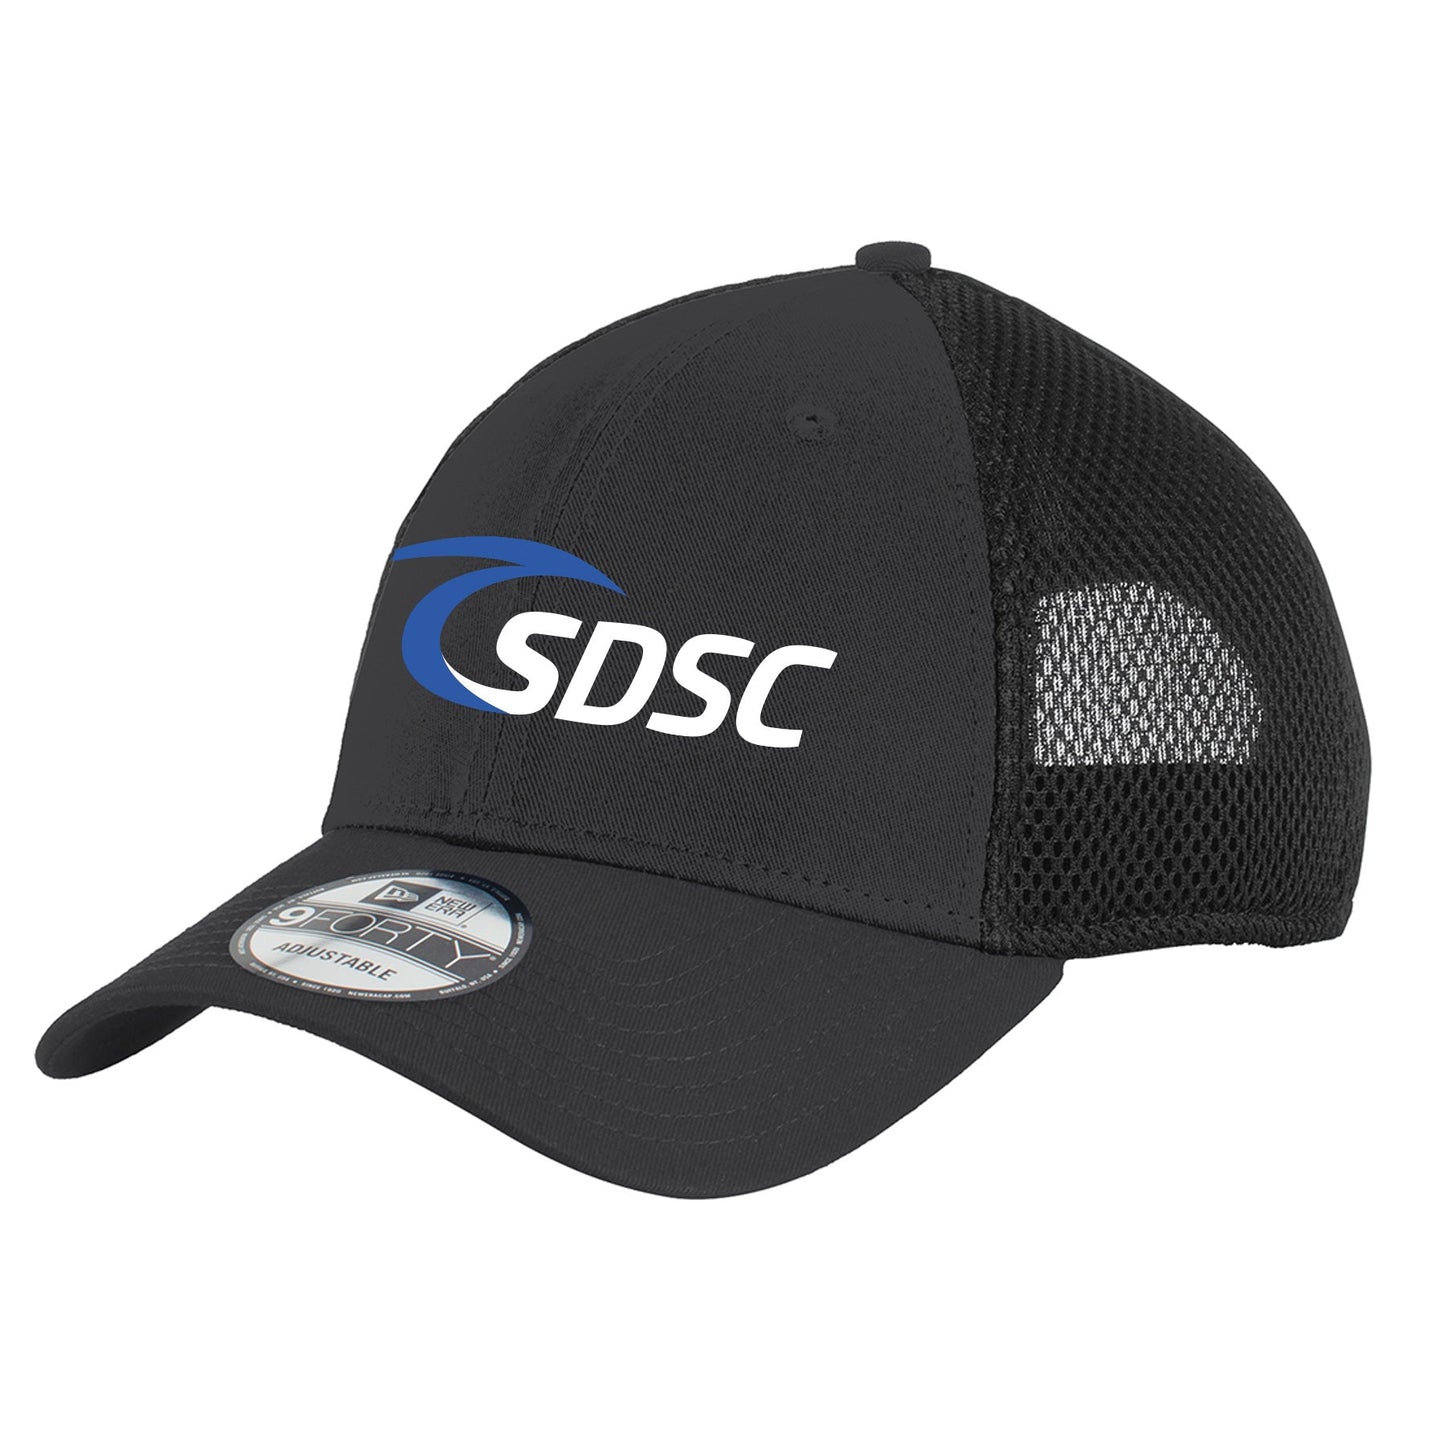 SDSC LOGO NEW ERA SNAPBACK CONTRAST FRONT MESH CAP